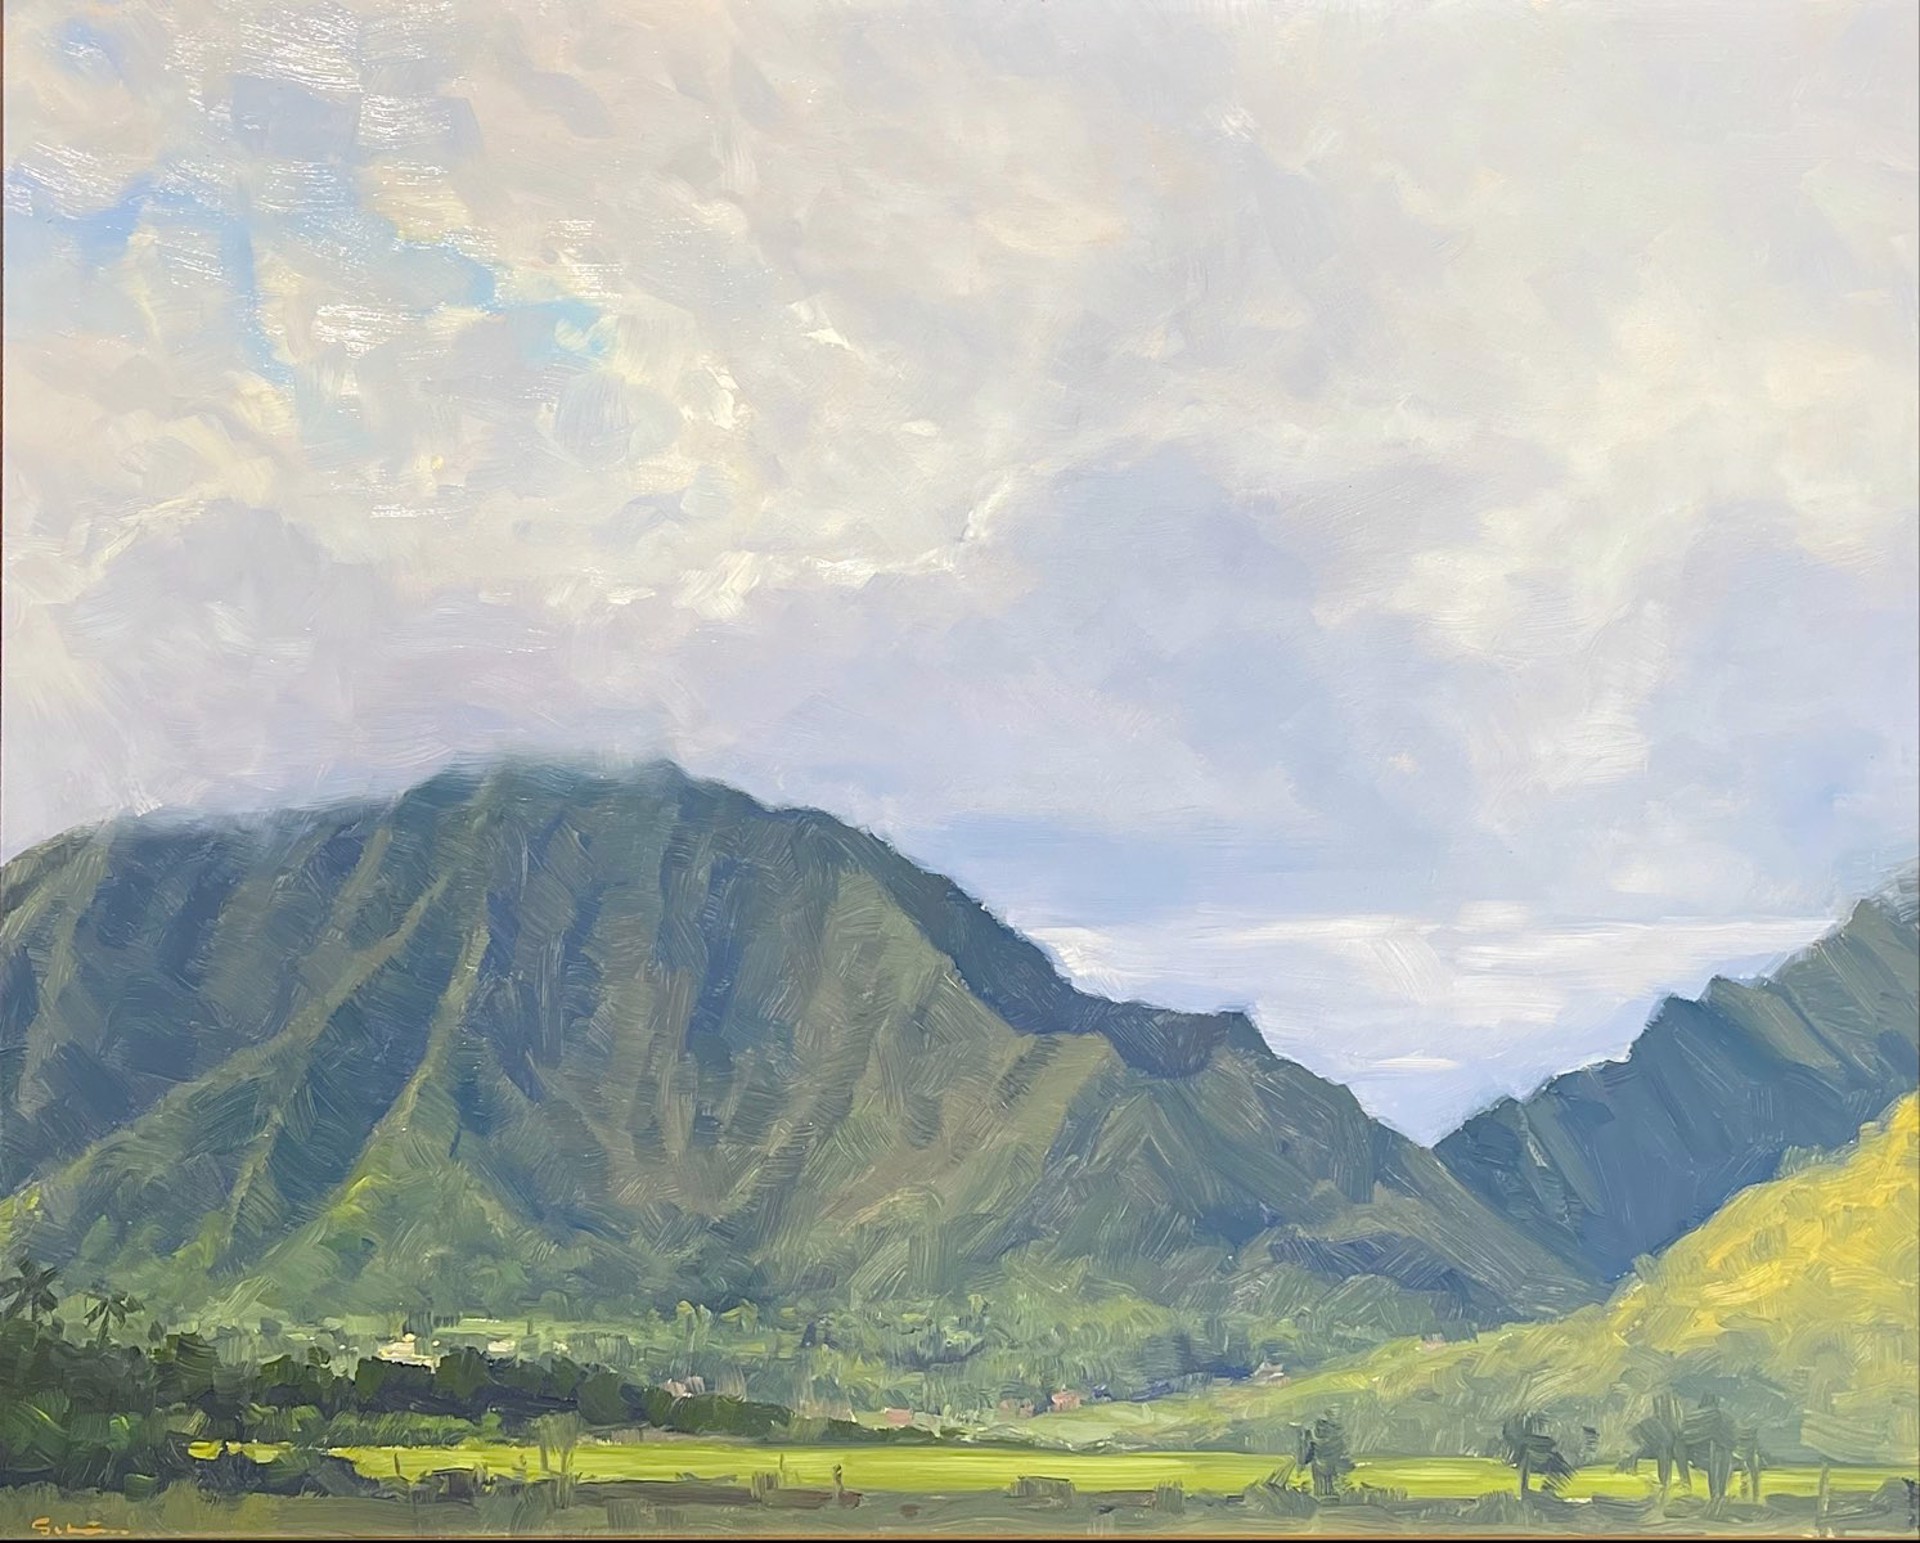 Kailua Fields by Stock Schlueter